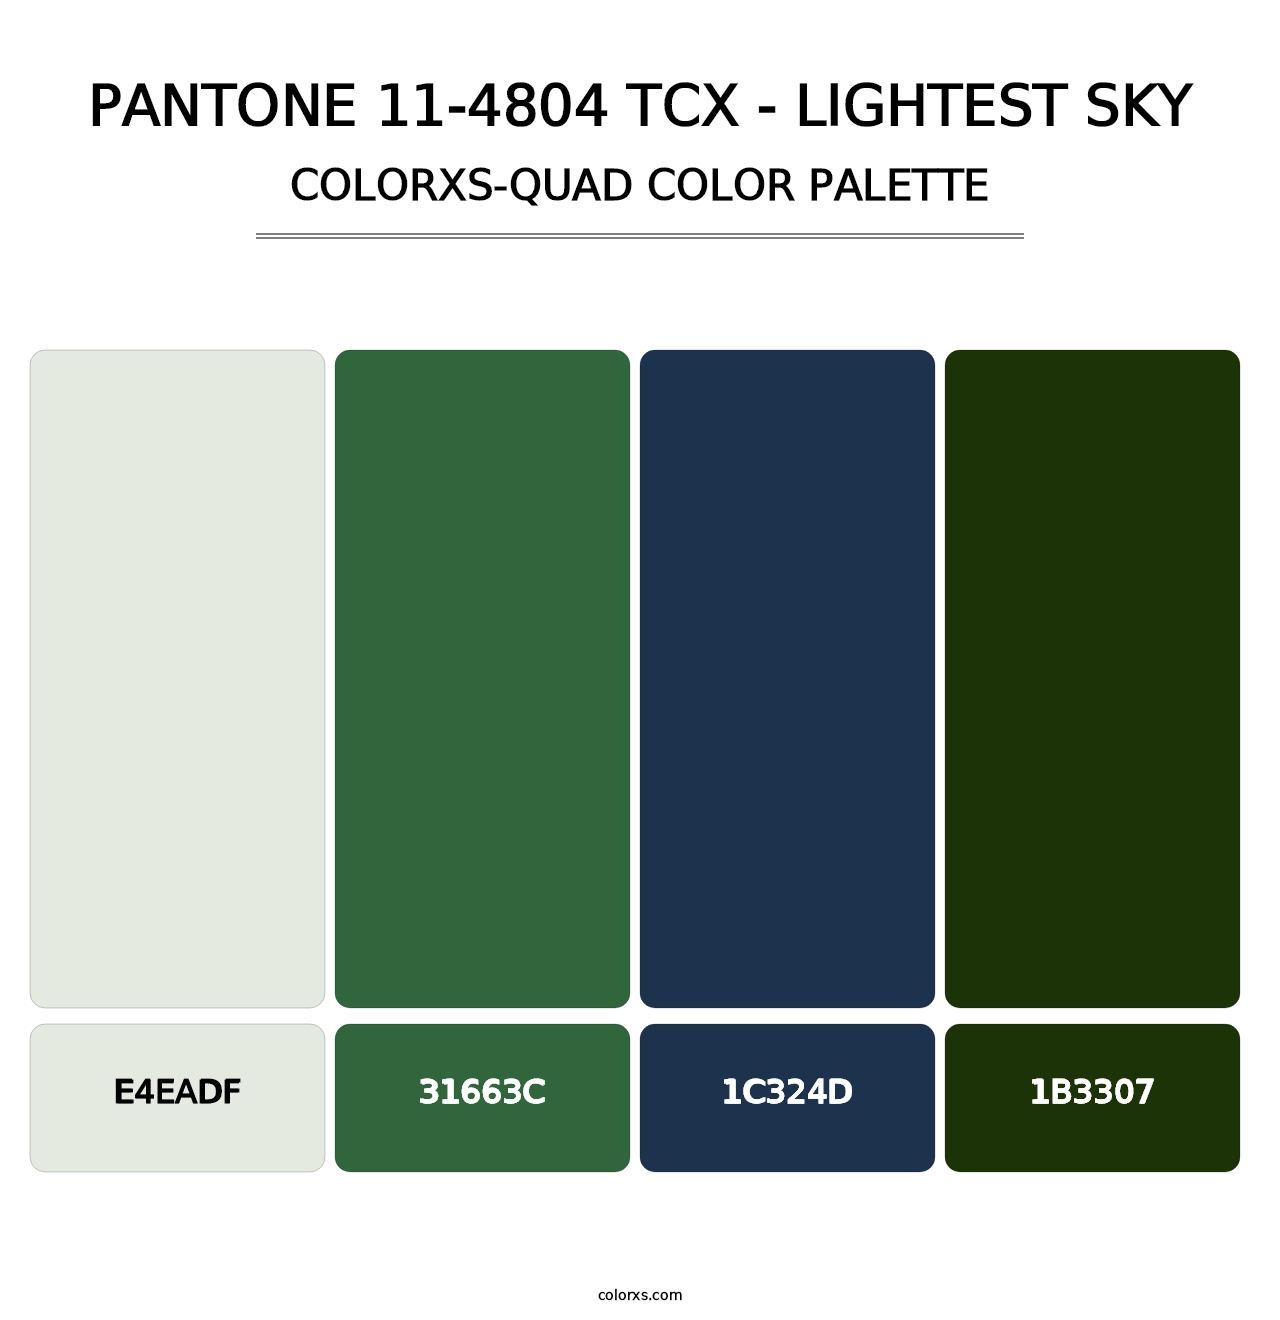 PANTONE 11-4804 TCX - Lightest Sky - Colorxs Quad Palette